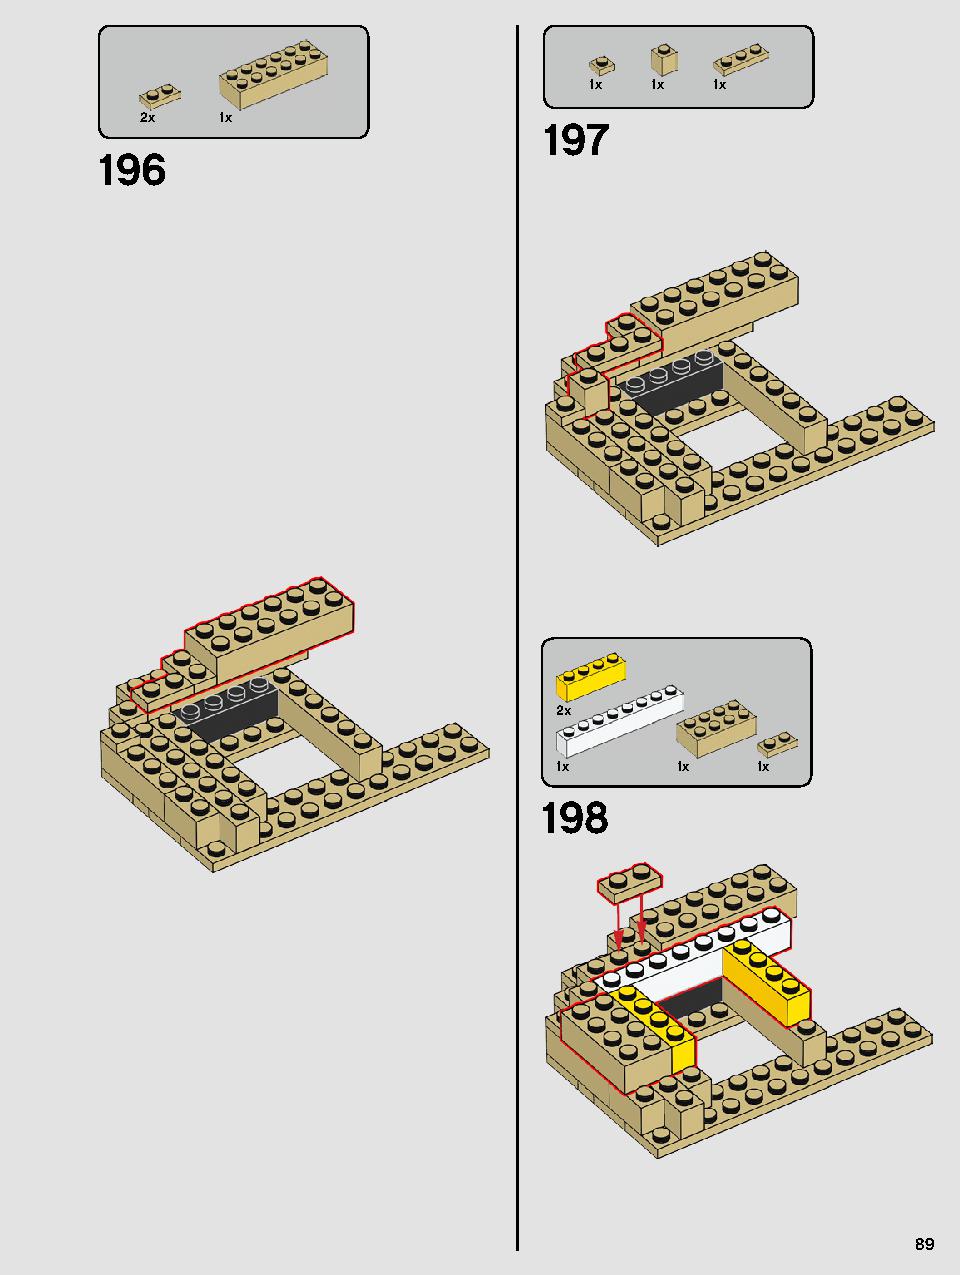 ヨーダ™ 75255 レゴの商品情報 レゴの説明書・組立方法 89 page